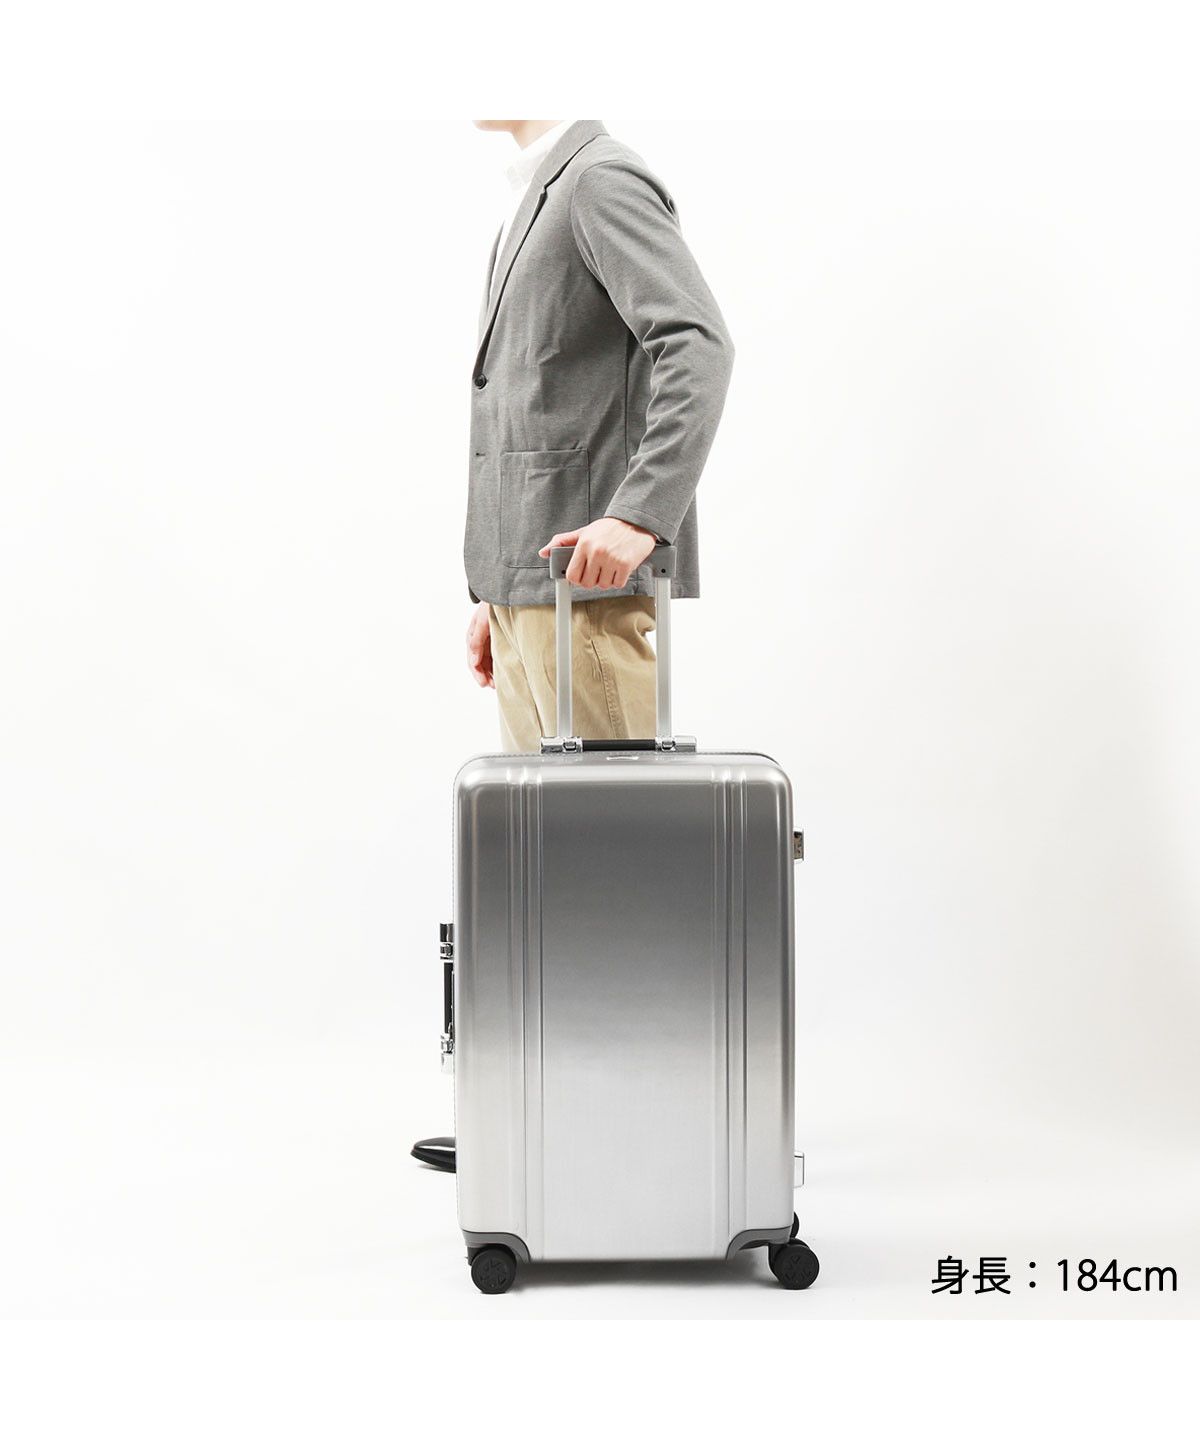 【日本正規品】 ゼロハリバートン スーツケース Mサイズ 軽量 TSAロック 仕切り ZERO HALLIBURTON キャリーケース シルバー  81289